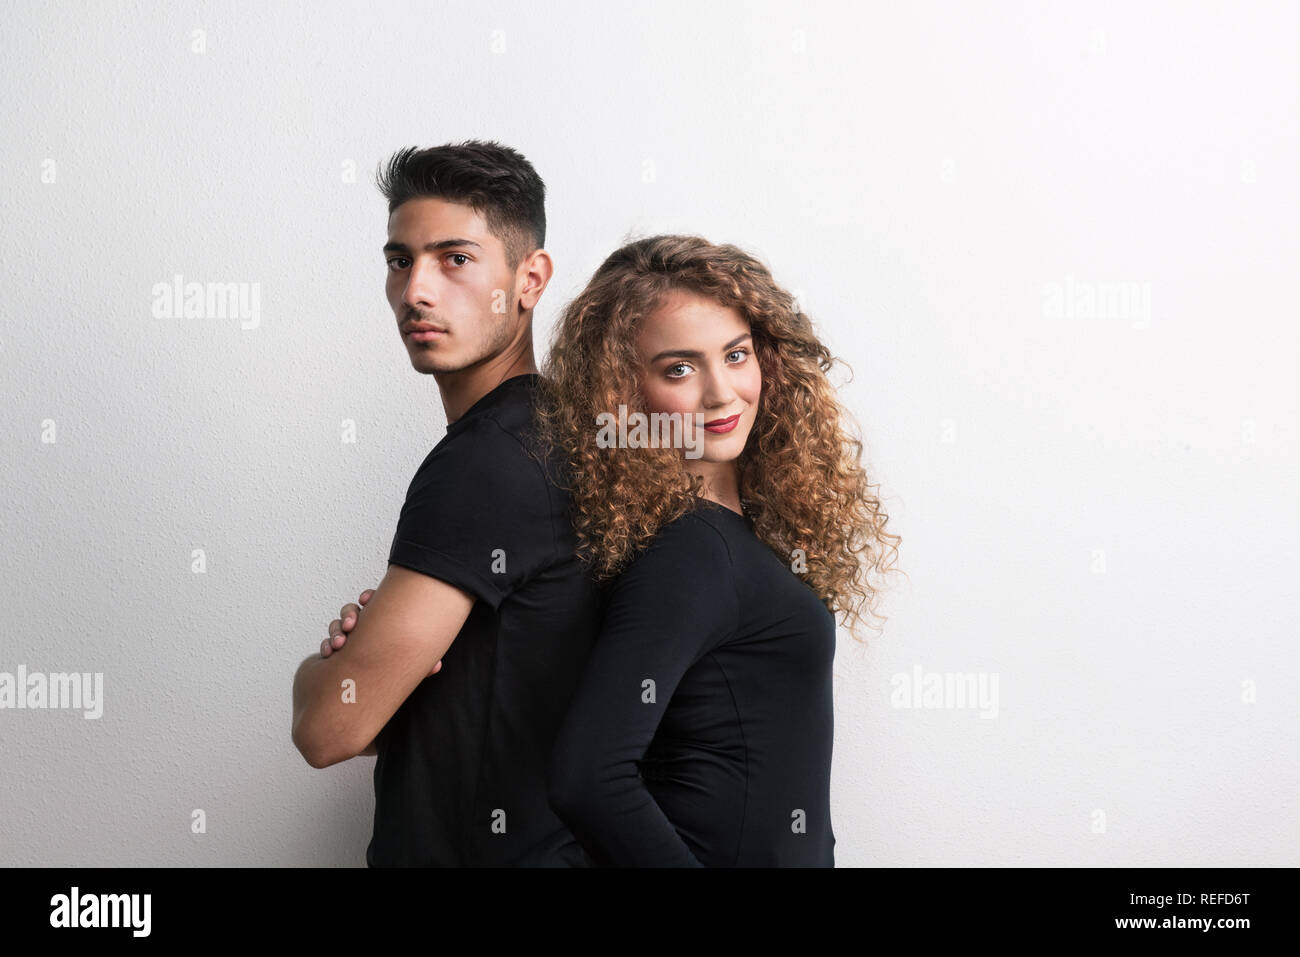 Porträt eines jungen Paares Rücken an Rücken in einem Studio, das Tragen von schwarzer Kleidung. Stockfoto